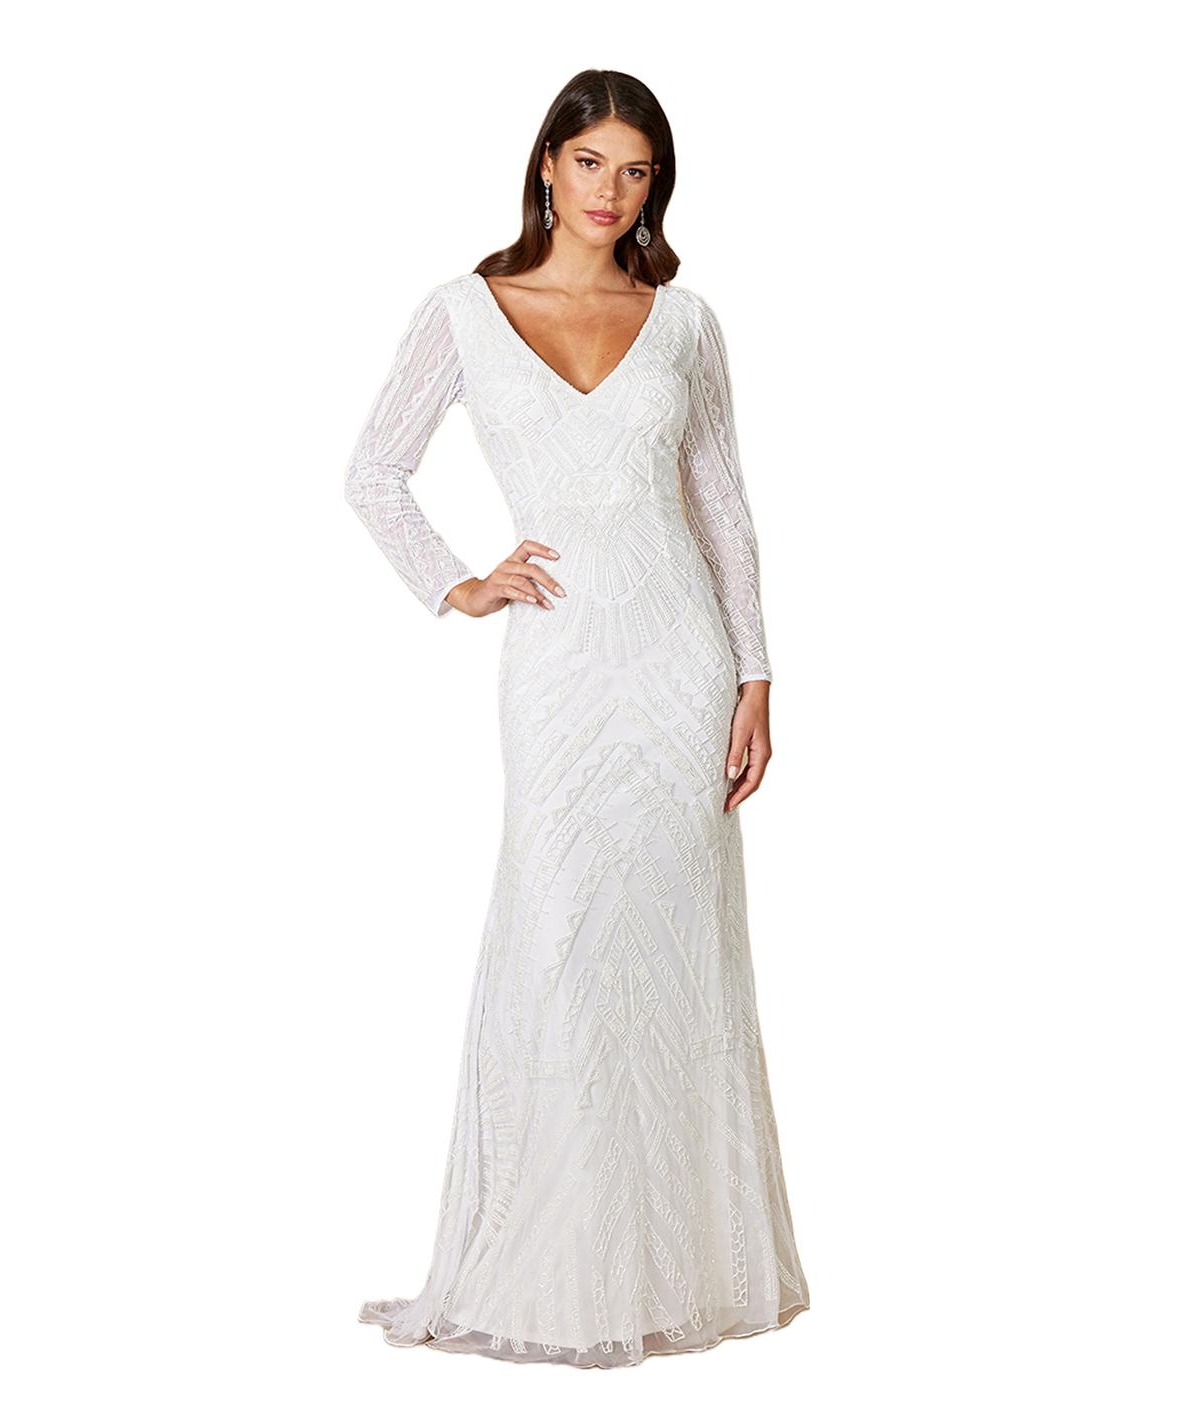 Women's White Gretchen V-Neck Long Sleeve Wedding Dress - Ivory